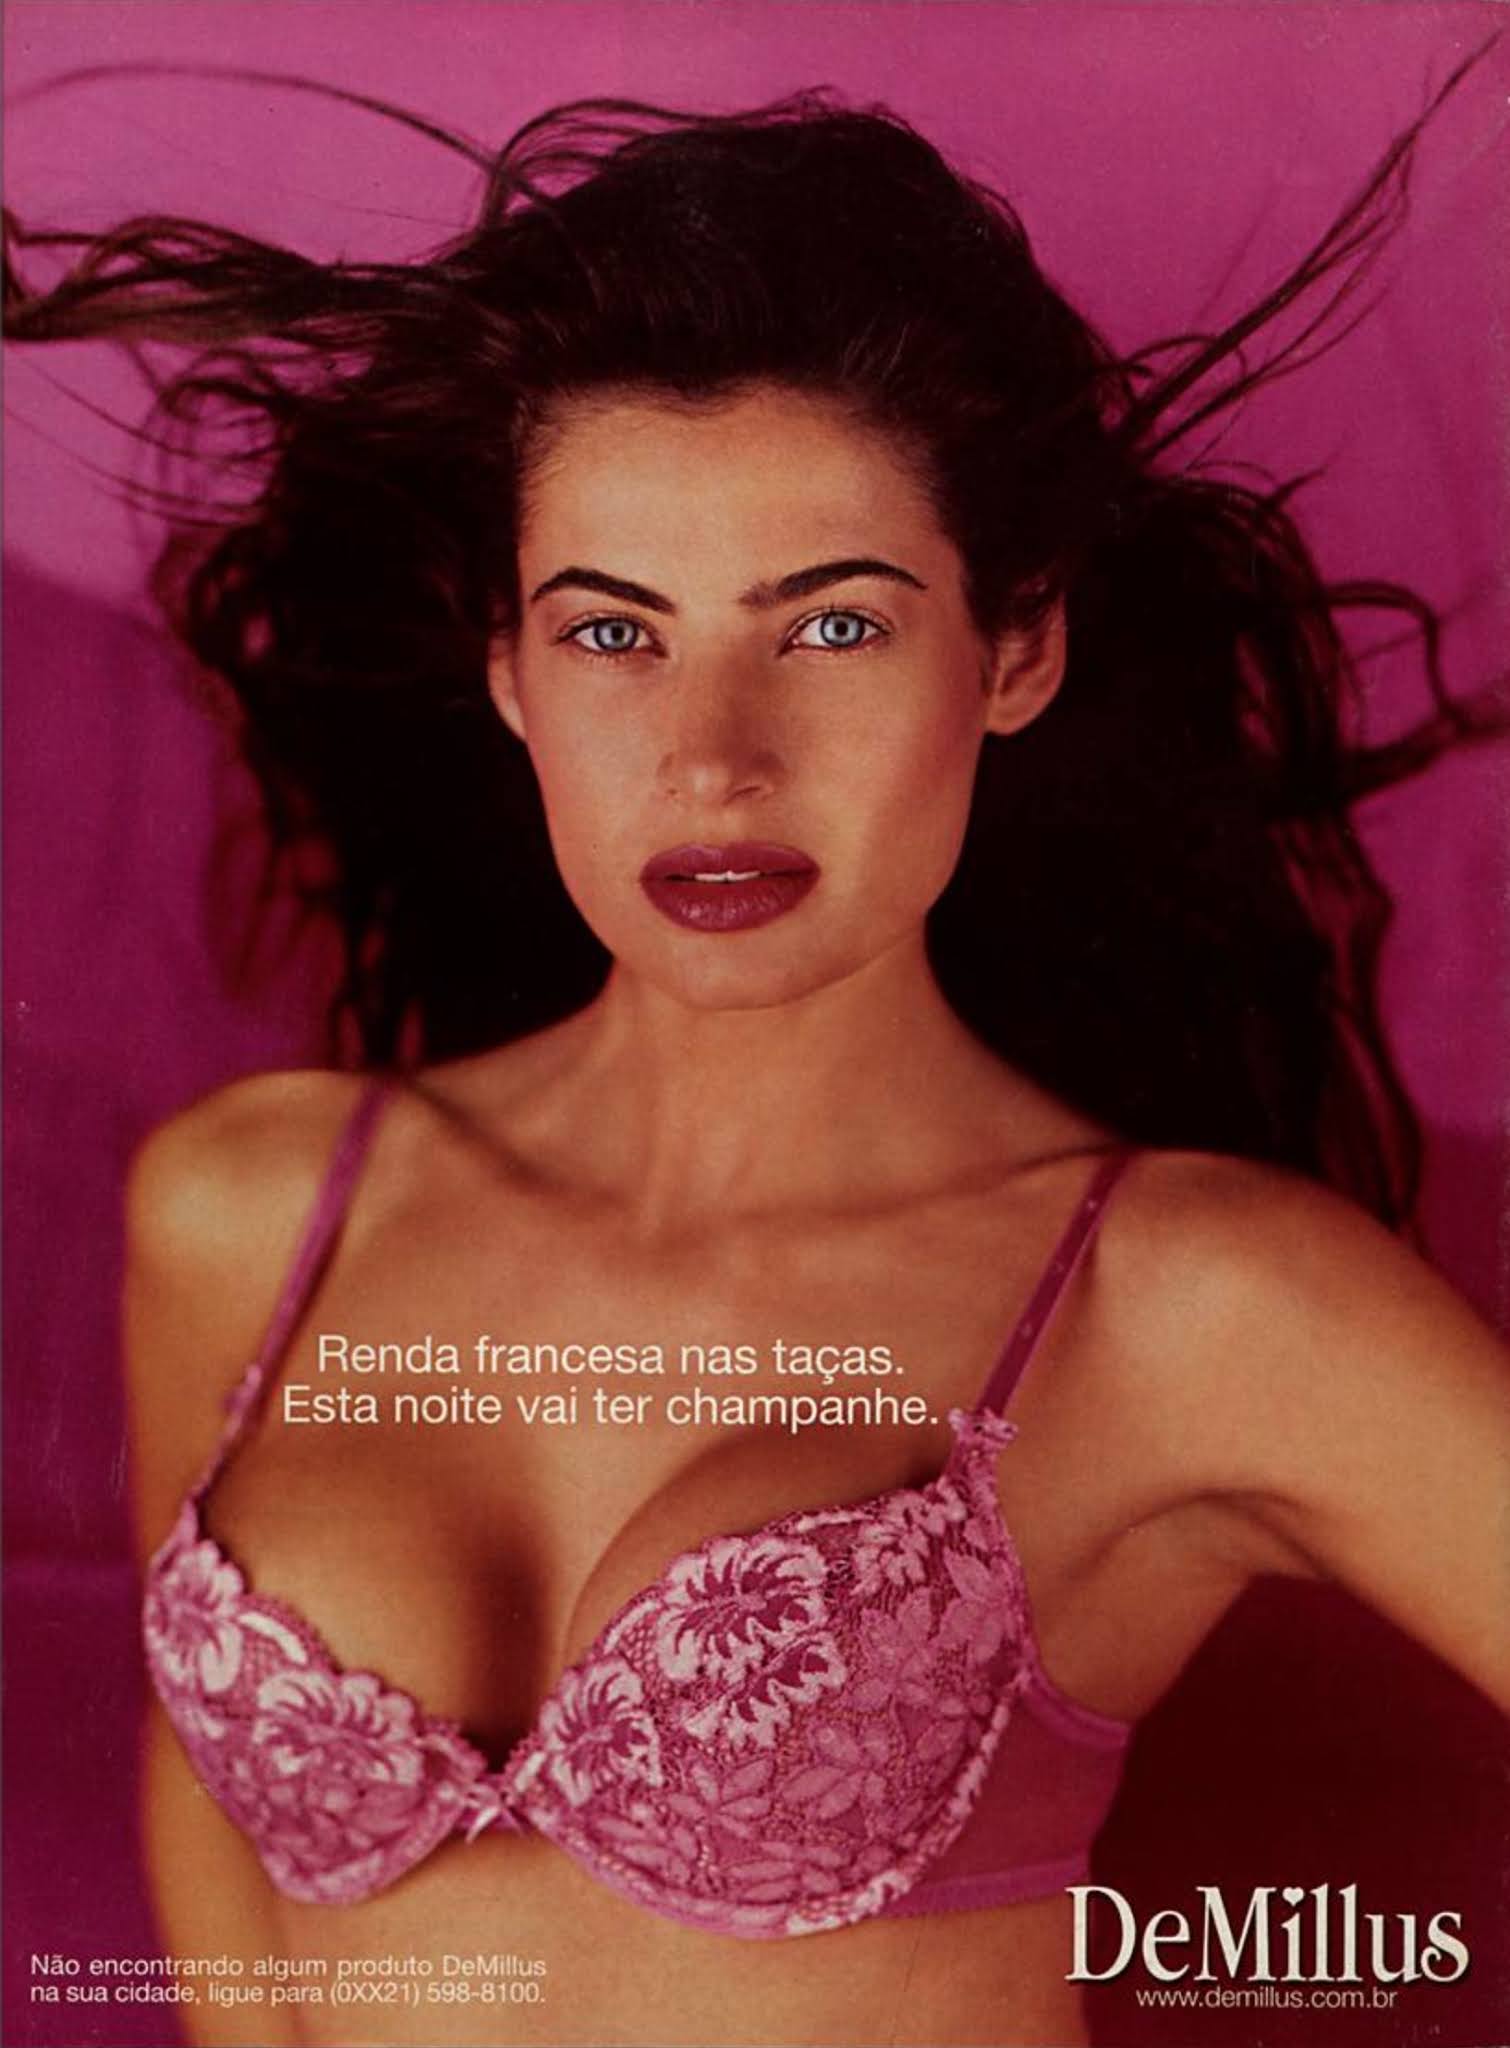 Anúncio da DeMillus promovendo sua lingerie com renda francesa no ano de 2001